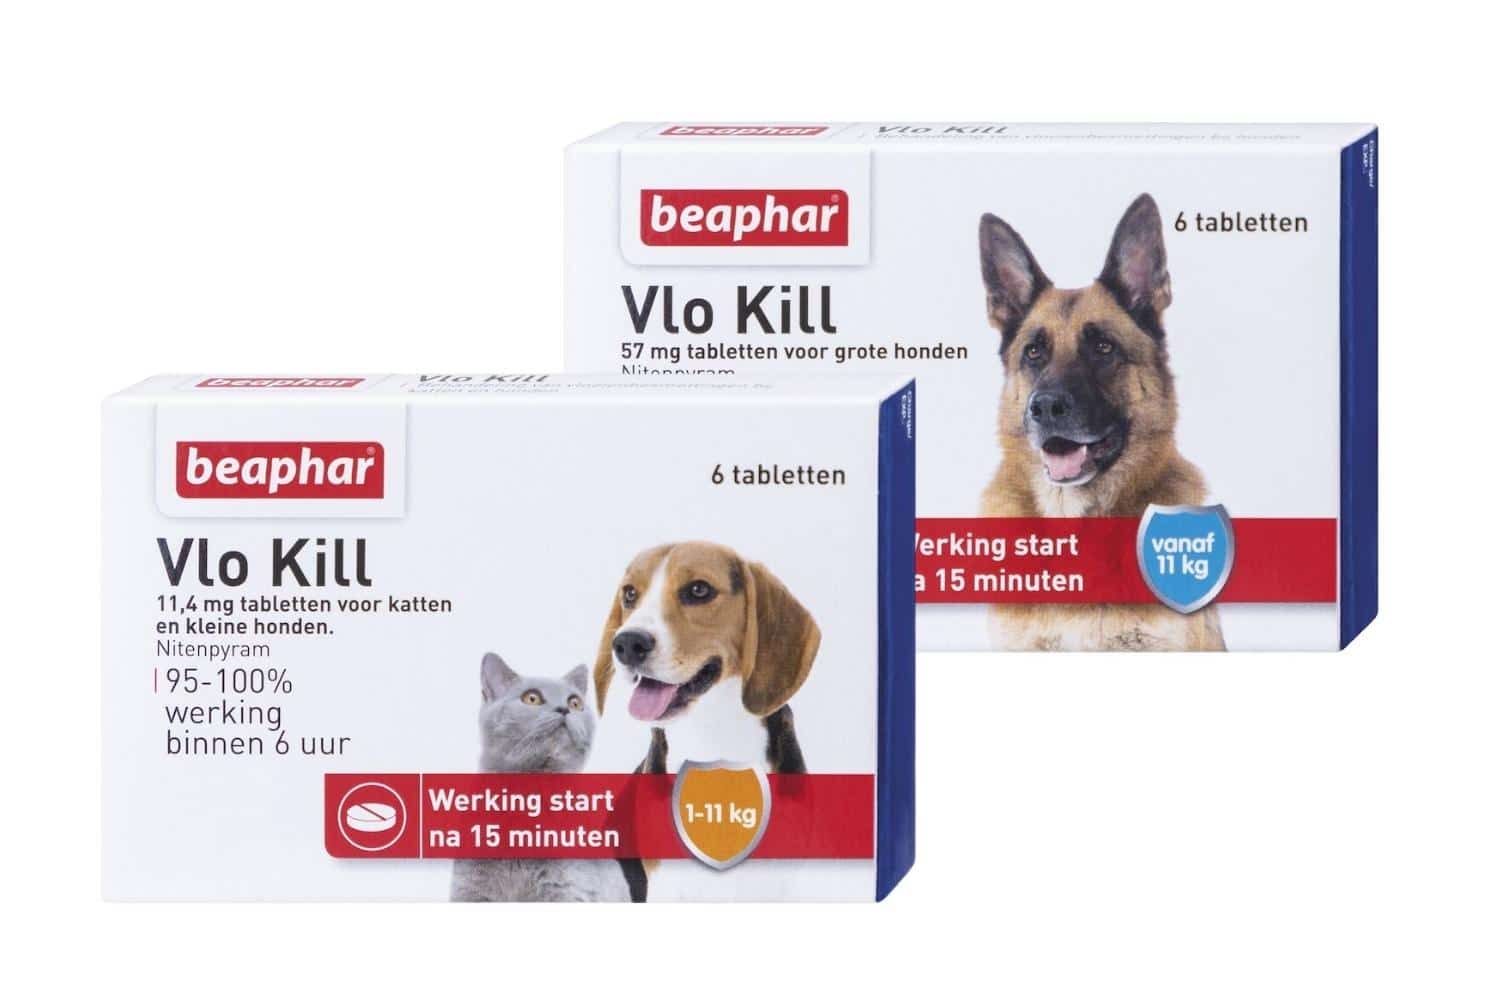 Beaphar Vlo Kill + kat & hond Veilig en betrouwbaar bestellen!